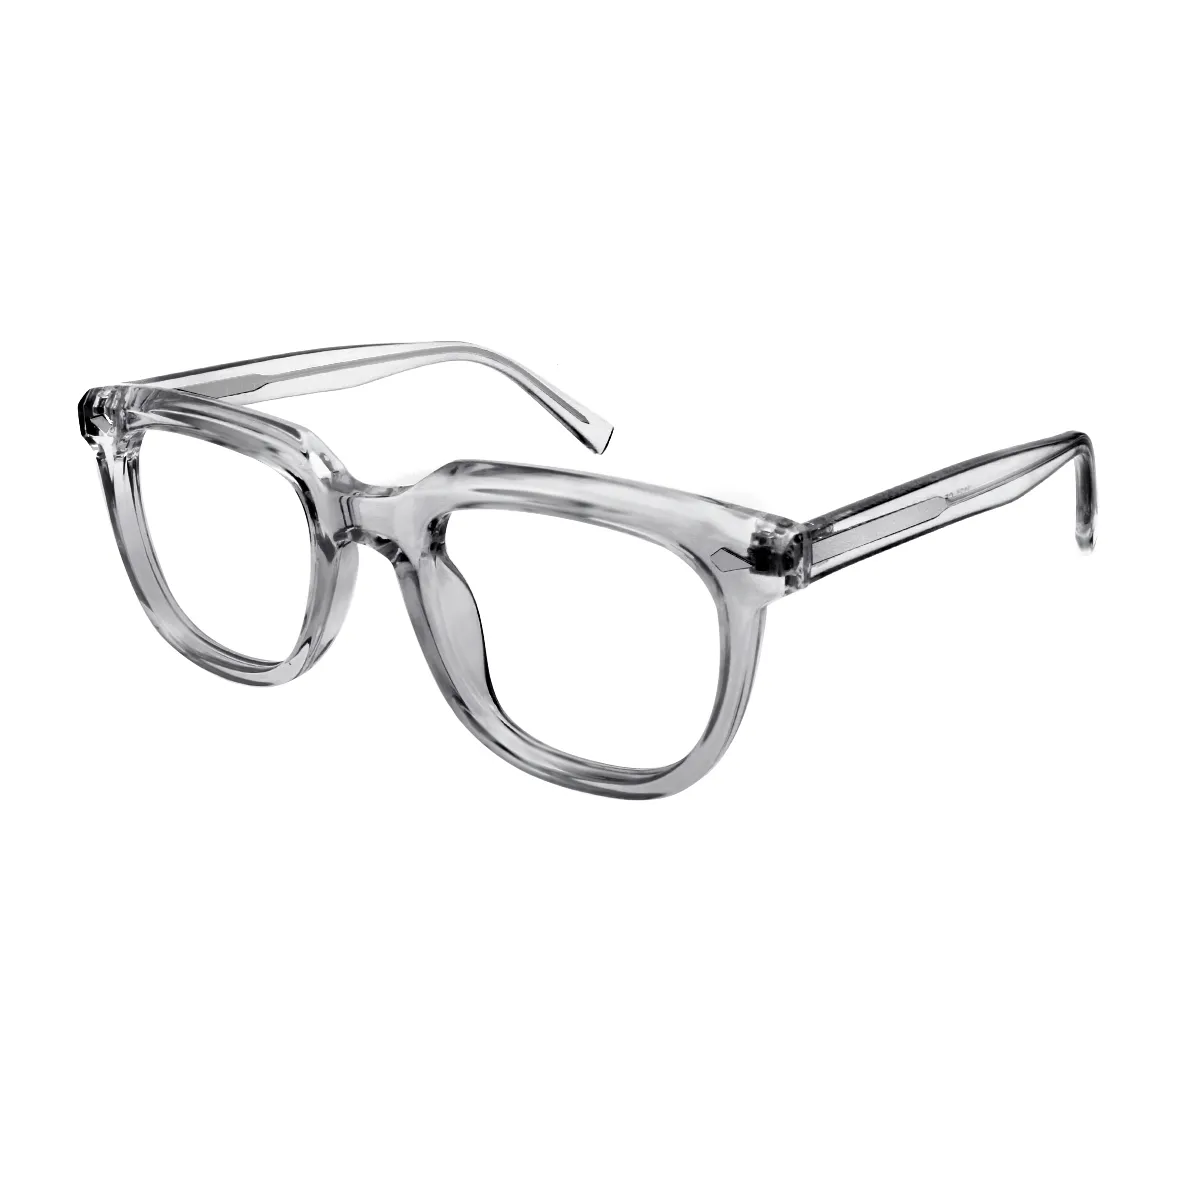 Rouse - Square  Glasses for Men & Women